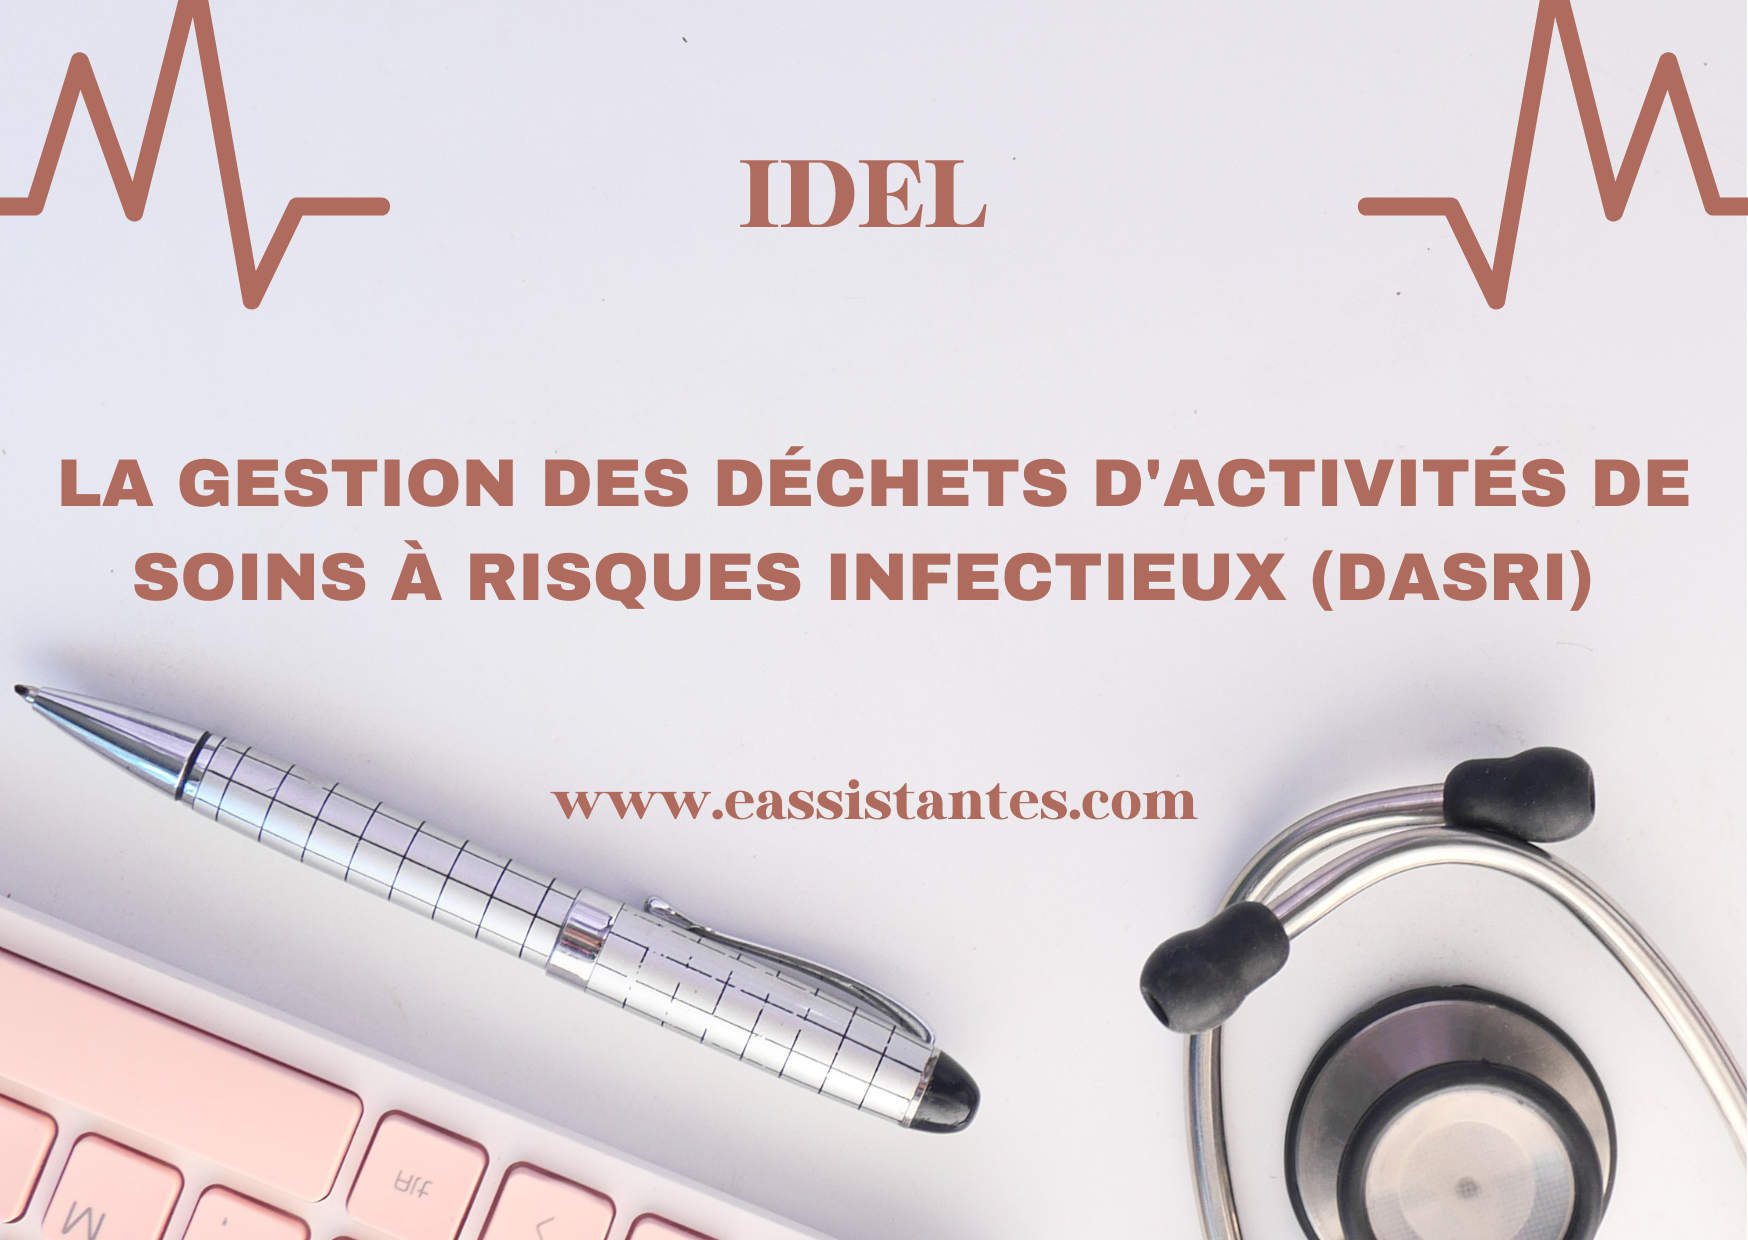 La gestion des Déchets d'Activités de Soins à Risques Infectieux (DASRI) pour les IDEL